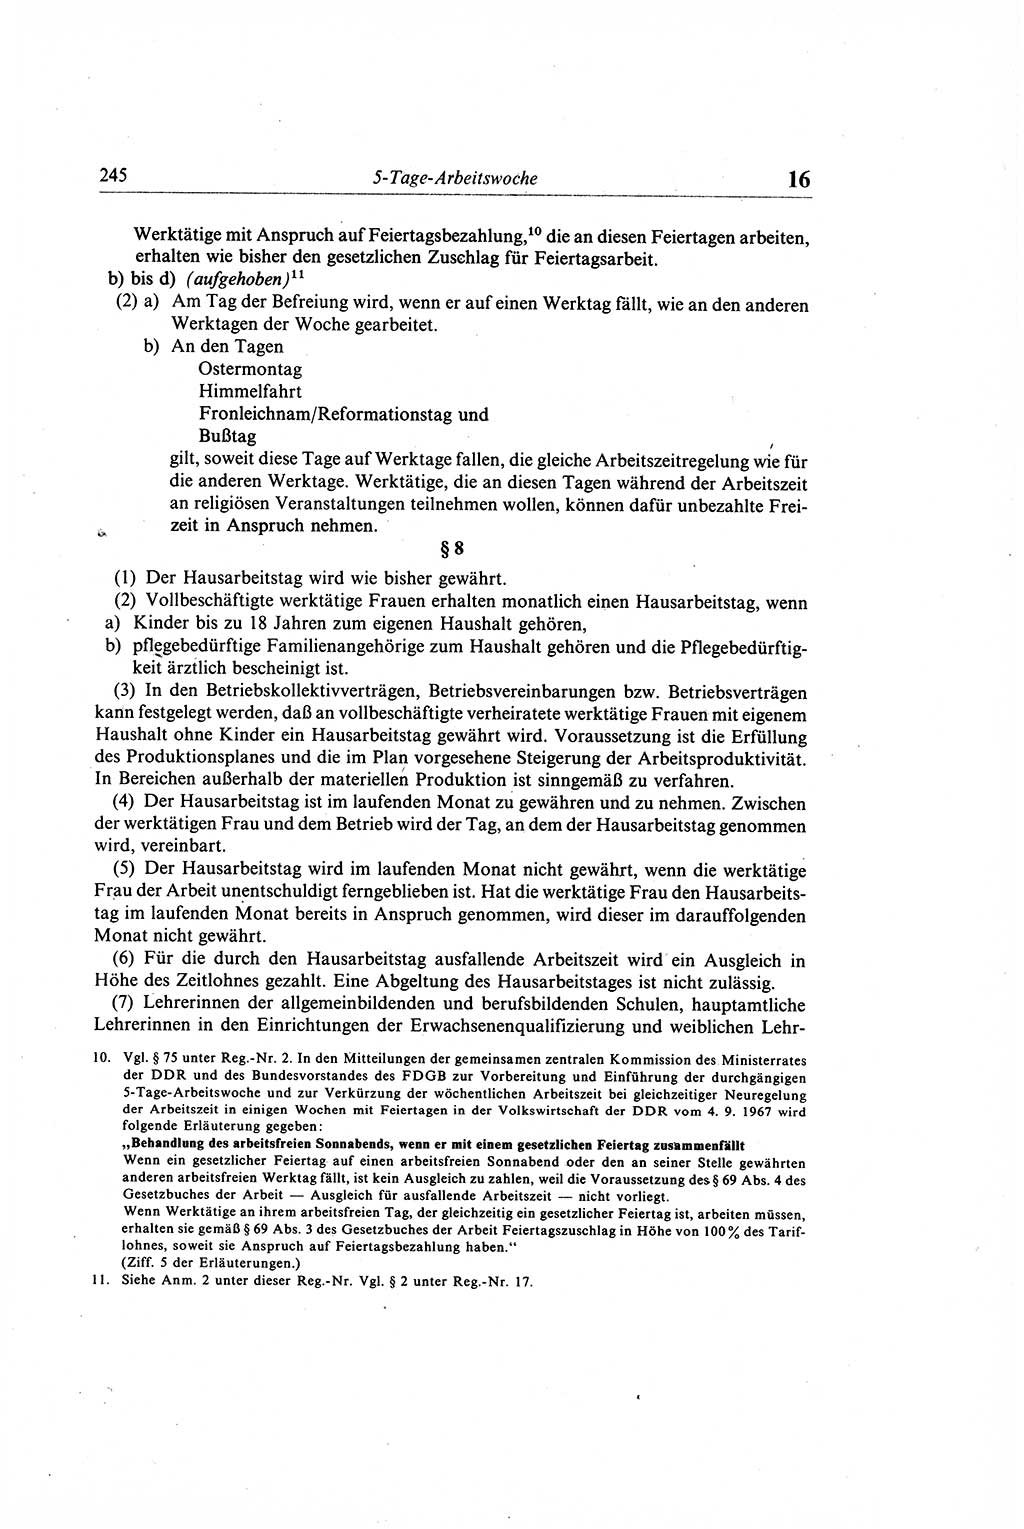 Gesetzbuch der Arbeit (GBA) und andere ausgewählte rechtliche Bestimmungen [Deutsche Demokratische Republik (DDR)] 1968, Seite 245 (GBA DDR 1968, S. 245)